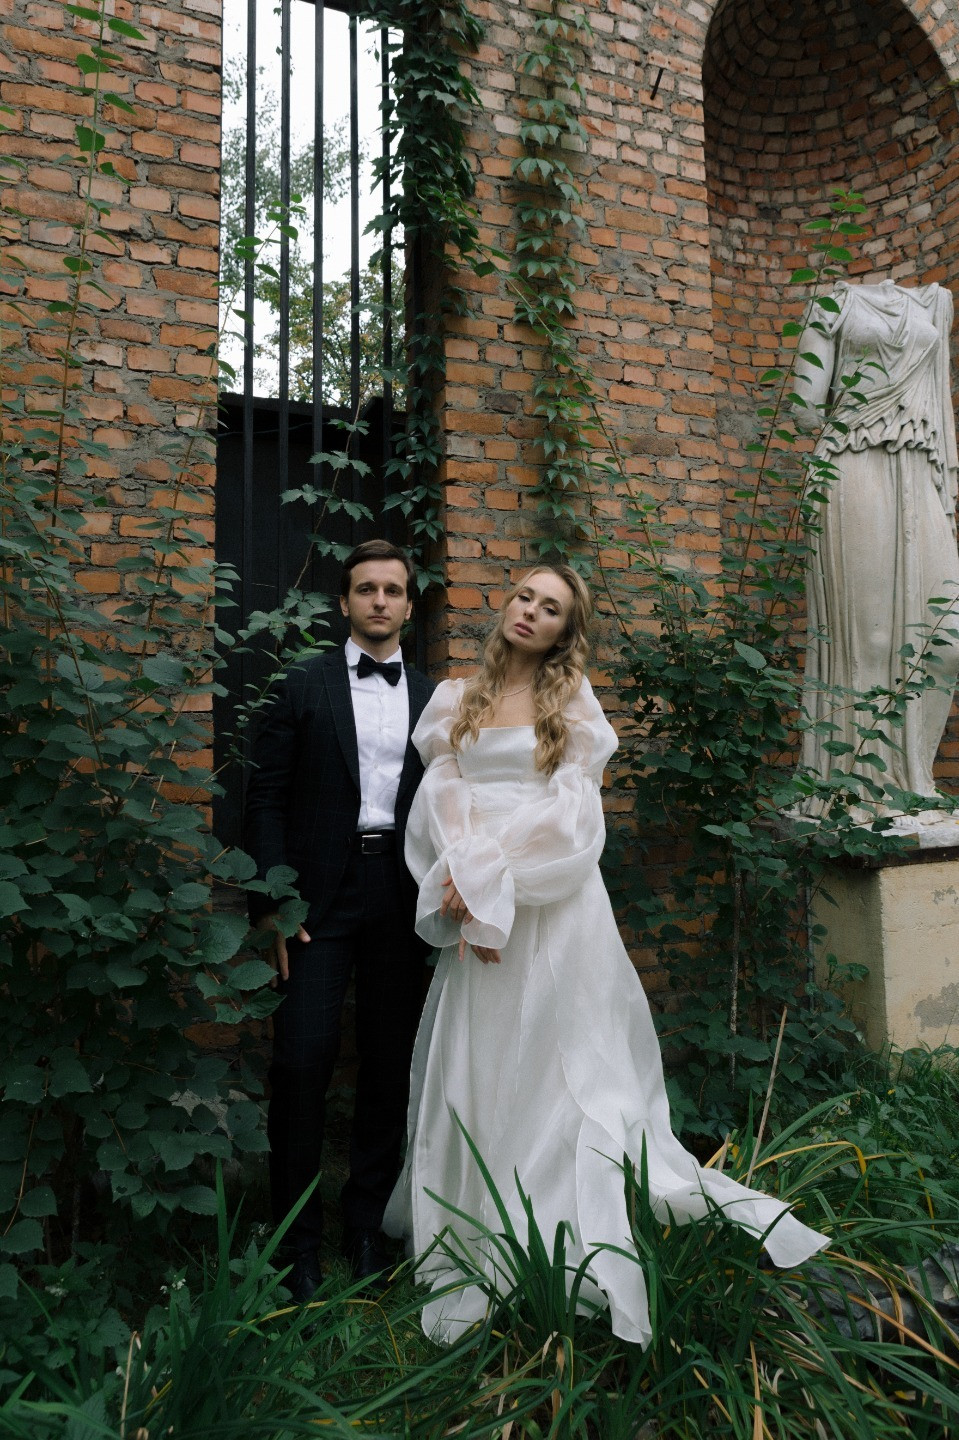 ФОТО ИЗ СТАТЬИ: Как Ромео и Джульетта: романтическая винтаж-свадьба в ресторане